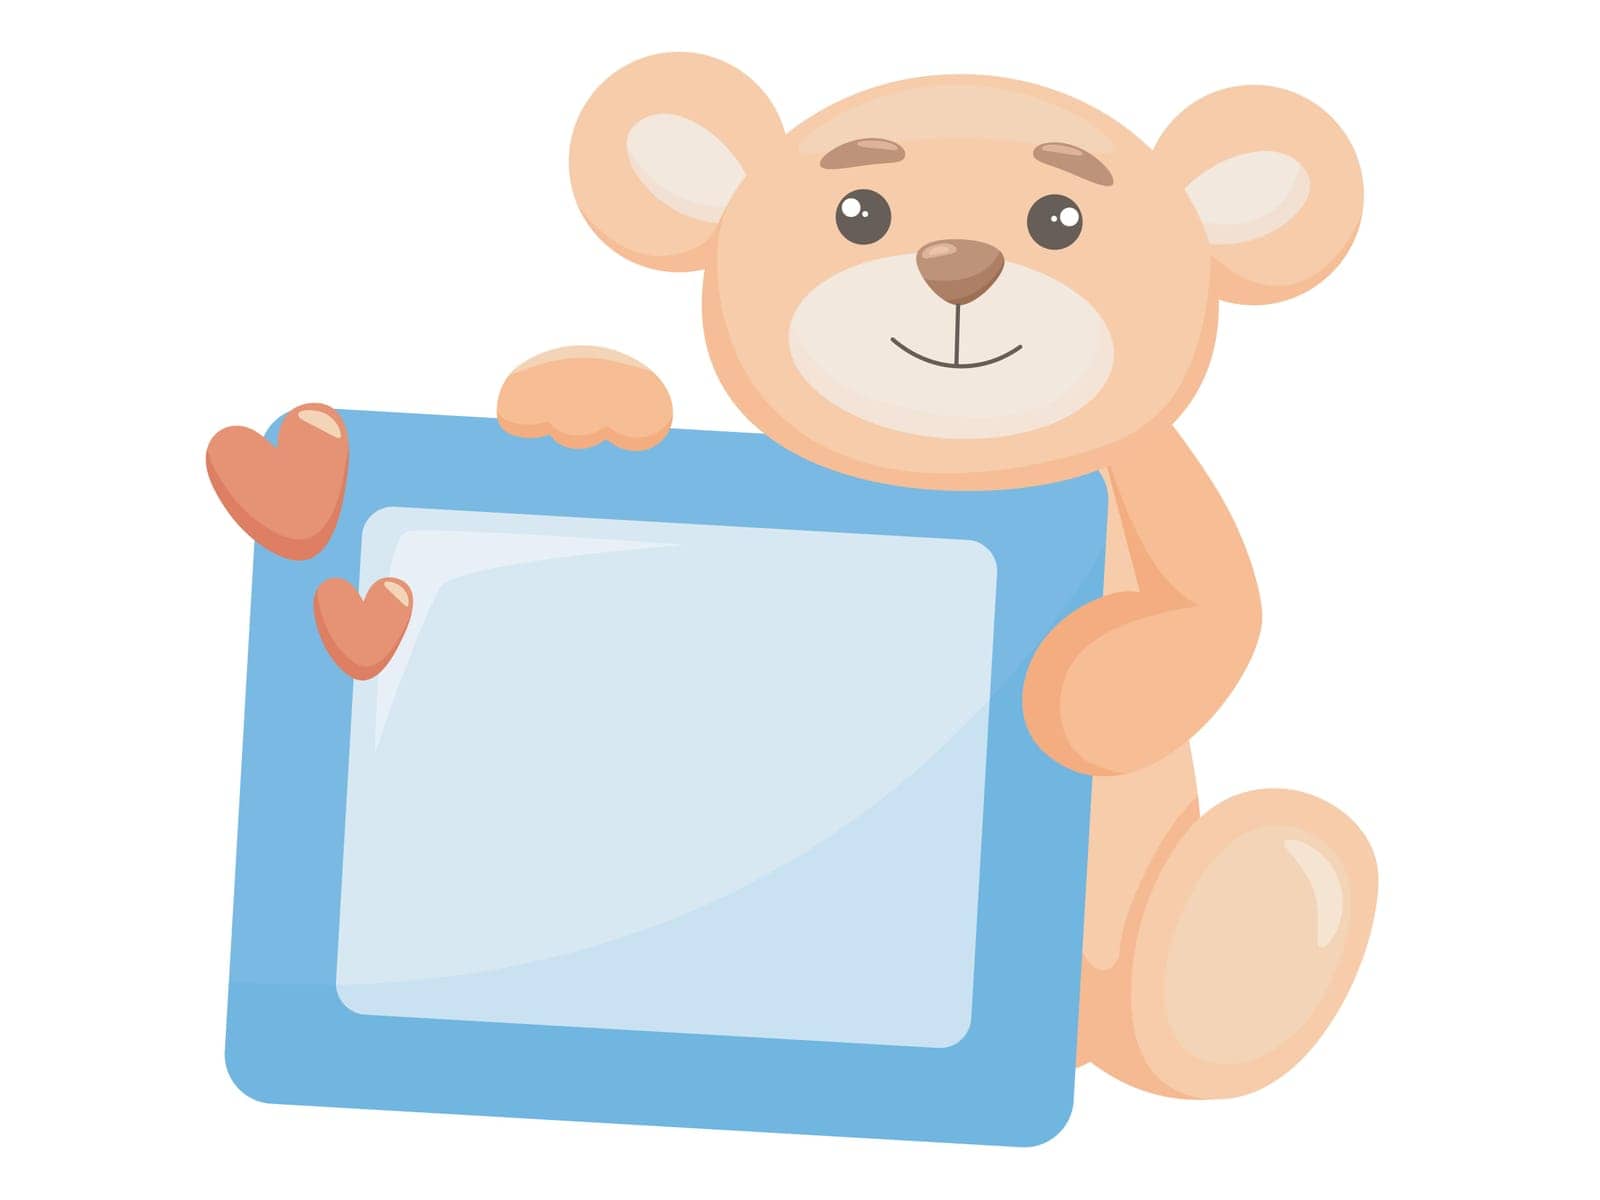 Teddy bear holding an empty photo frame cartoon style by TassiaK